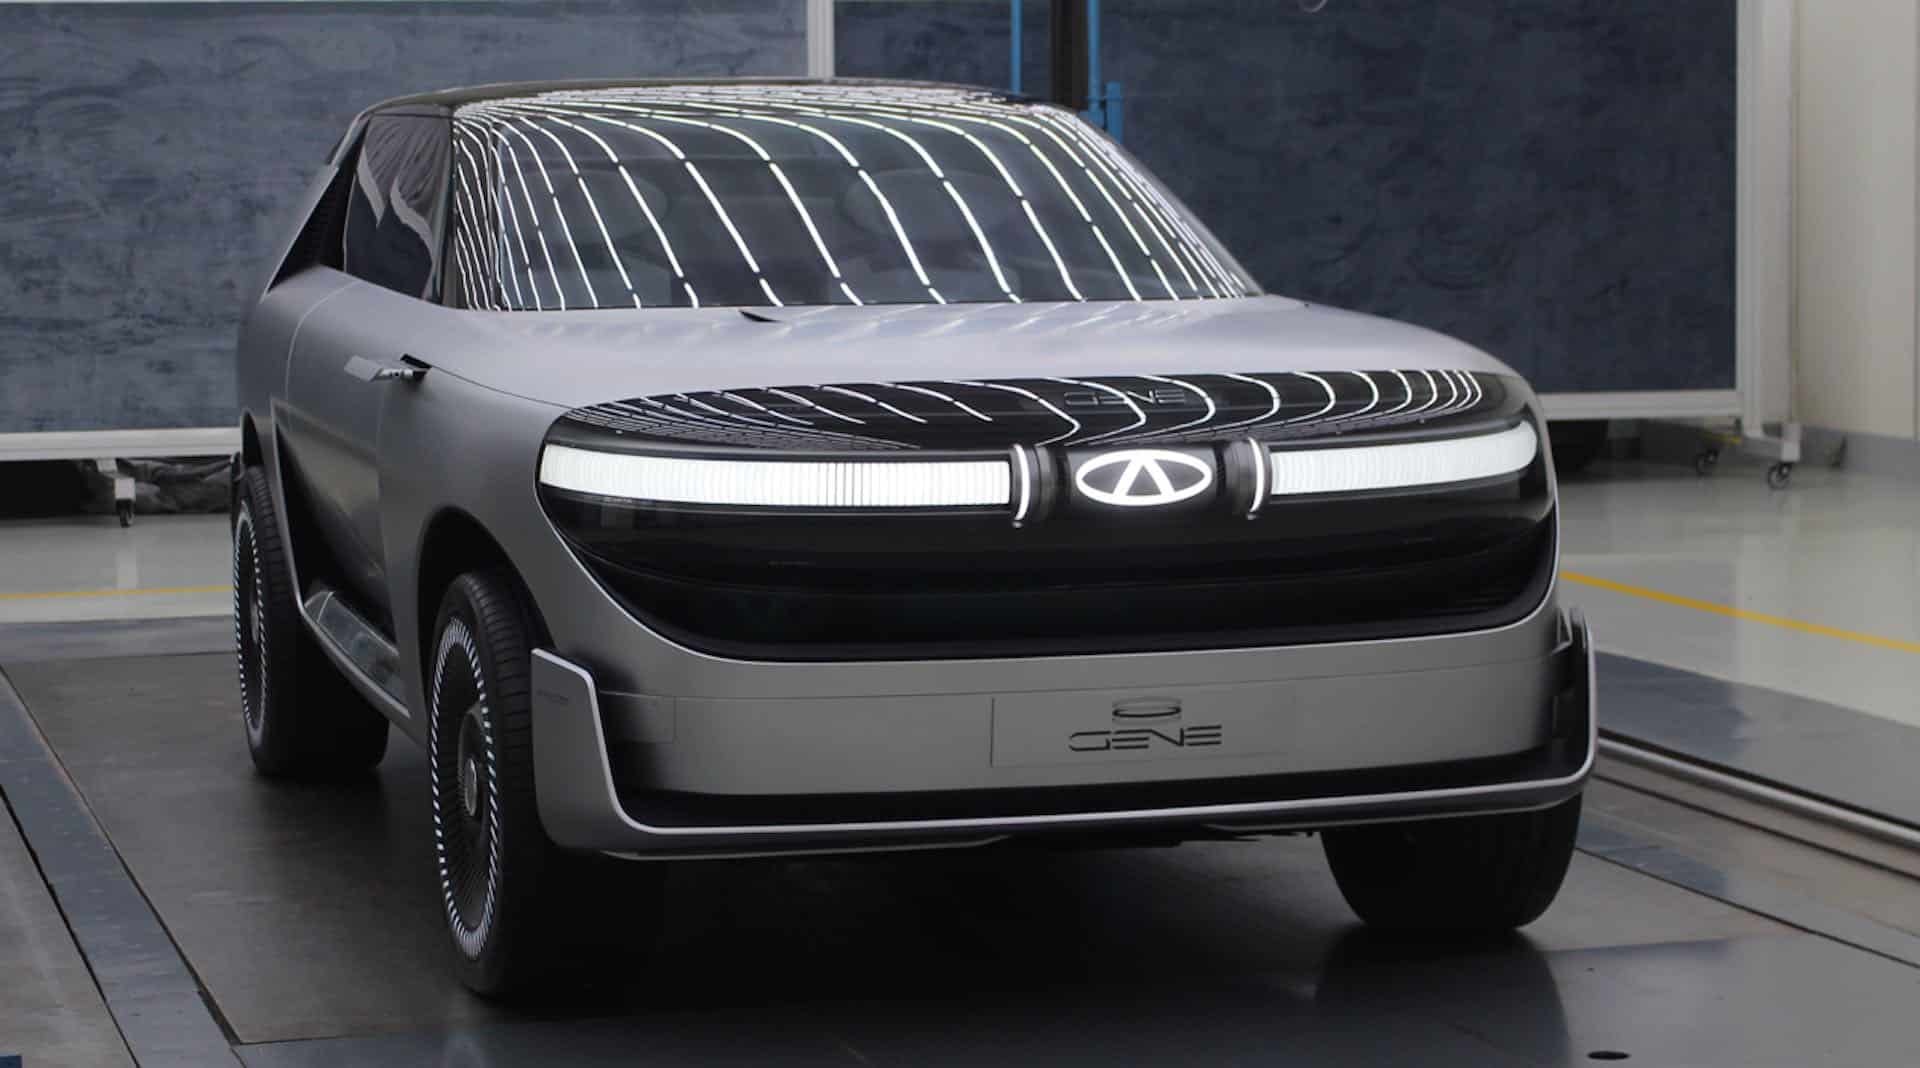 Le fabricant chinois de véhicules électriques Xpeng déclare que